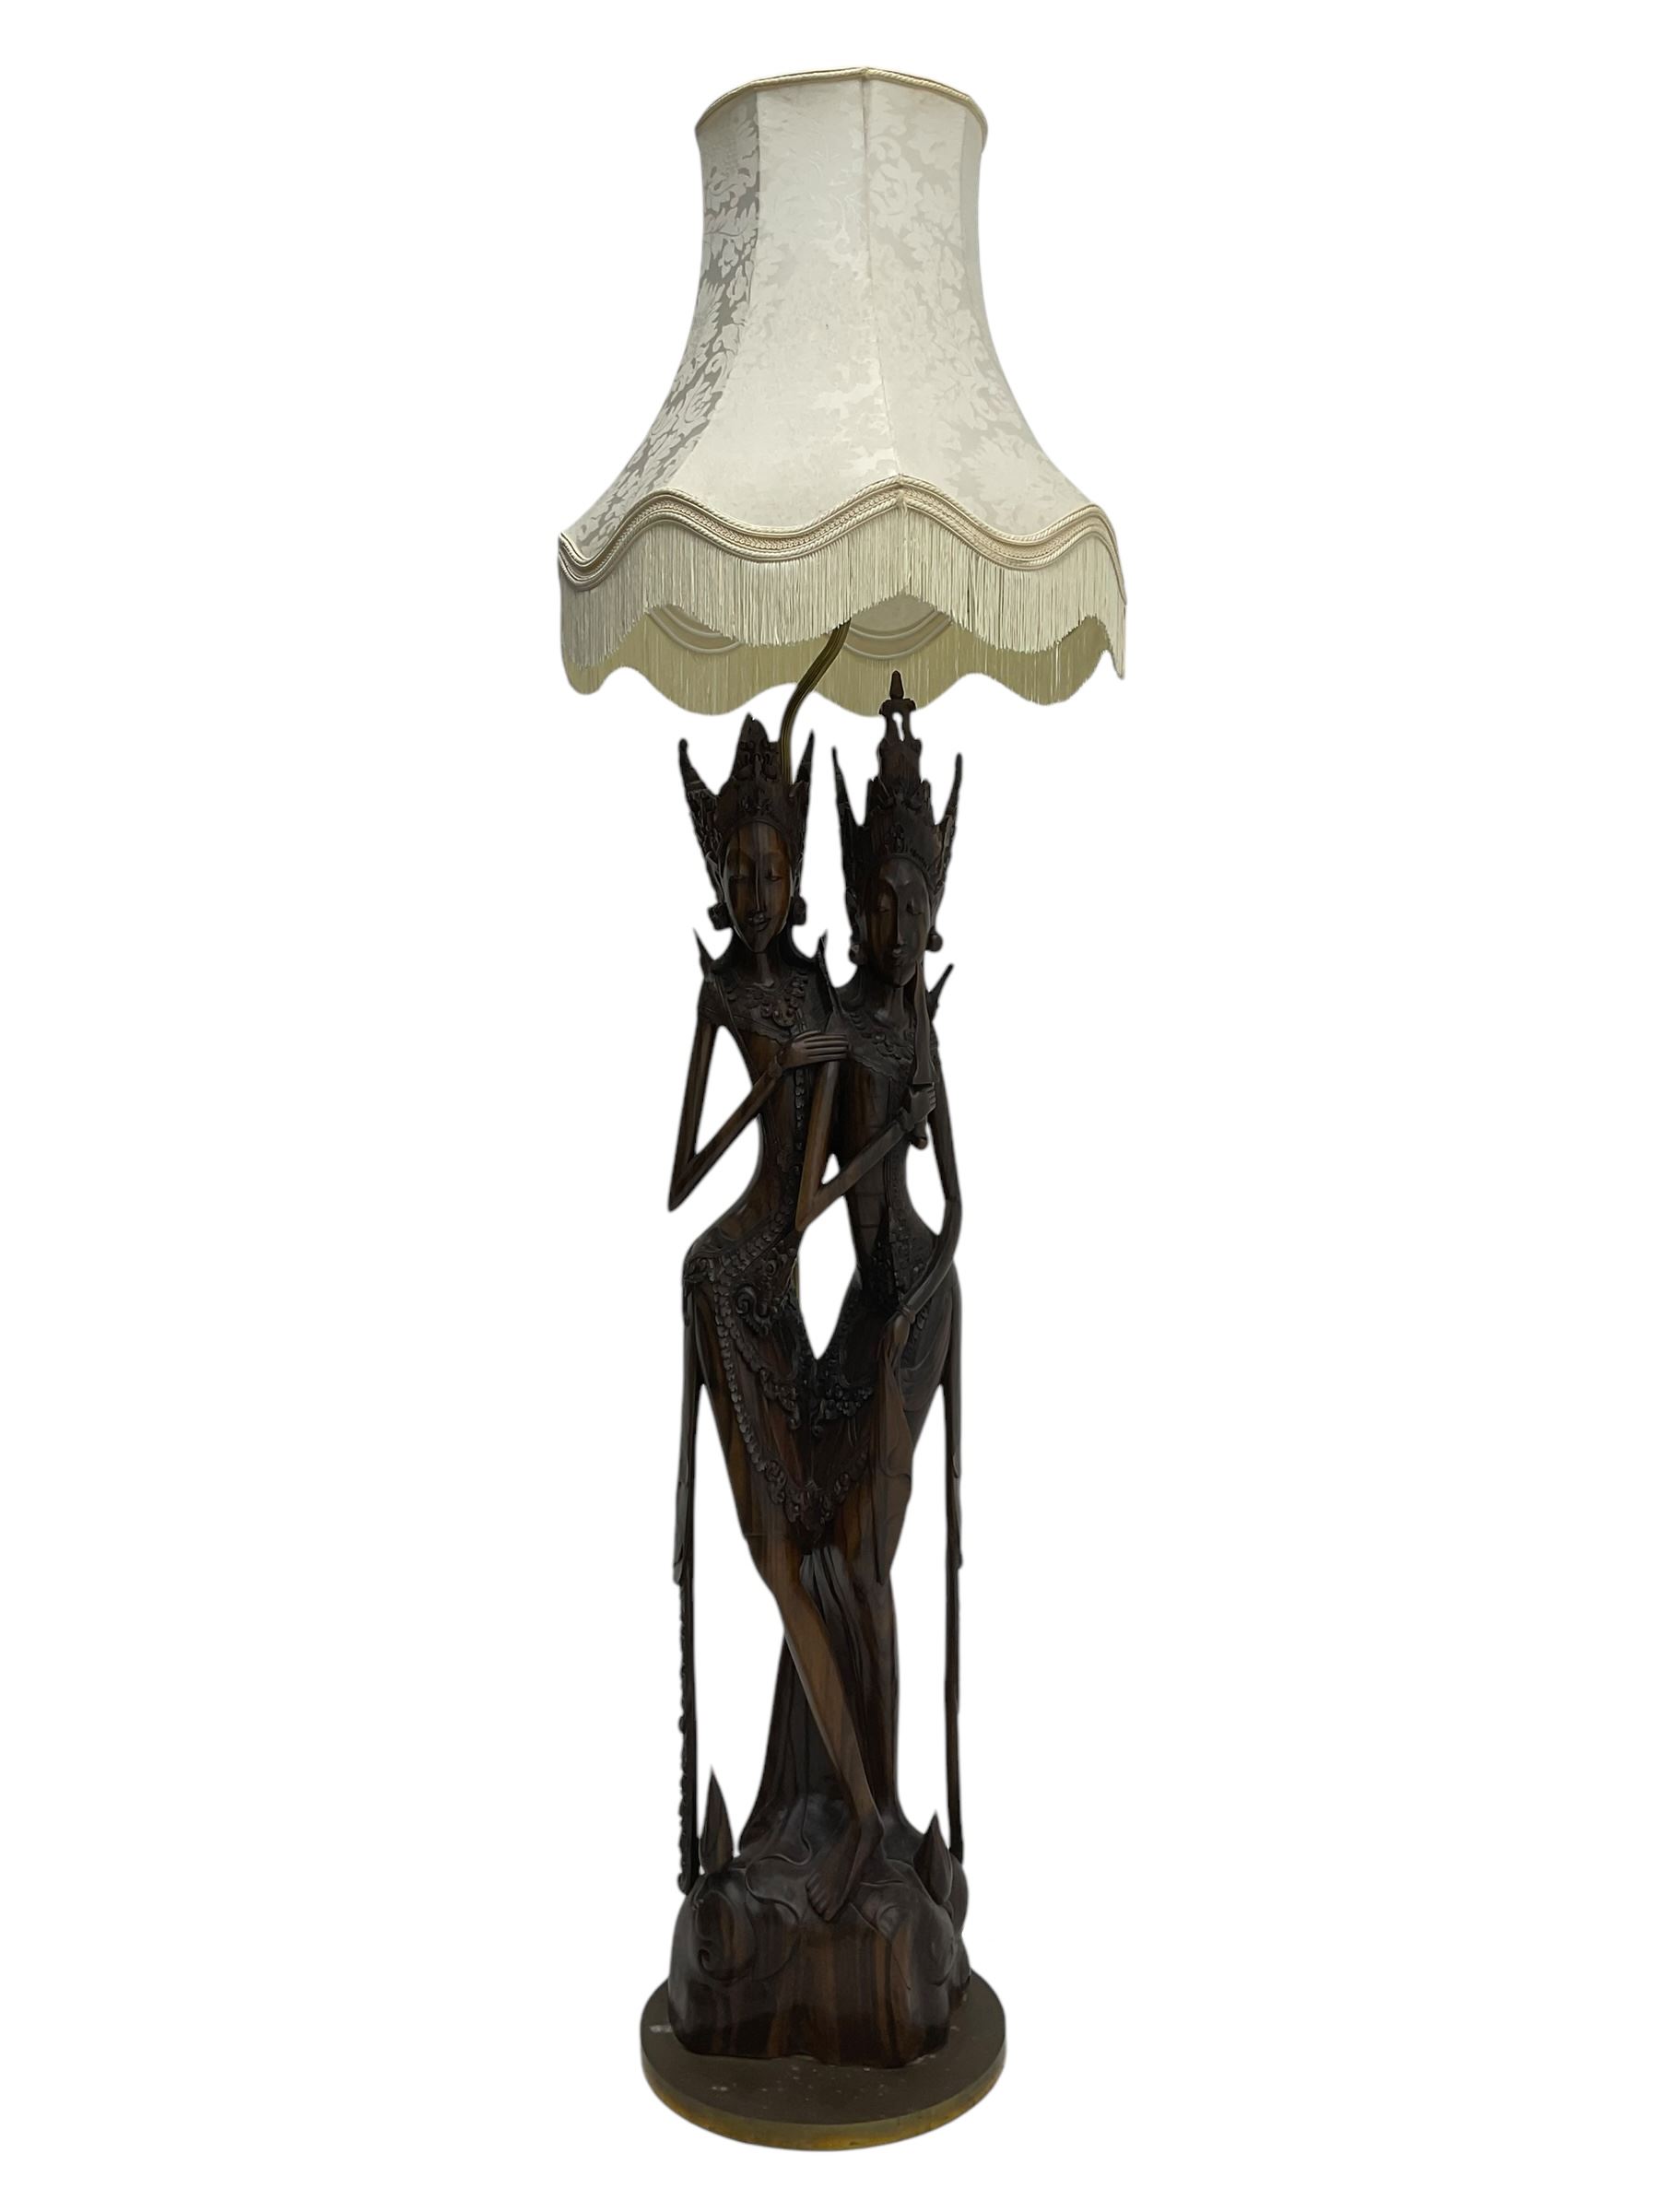 Carved hardwood figural standard lamp